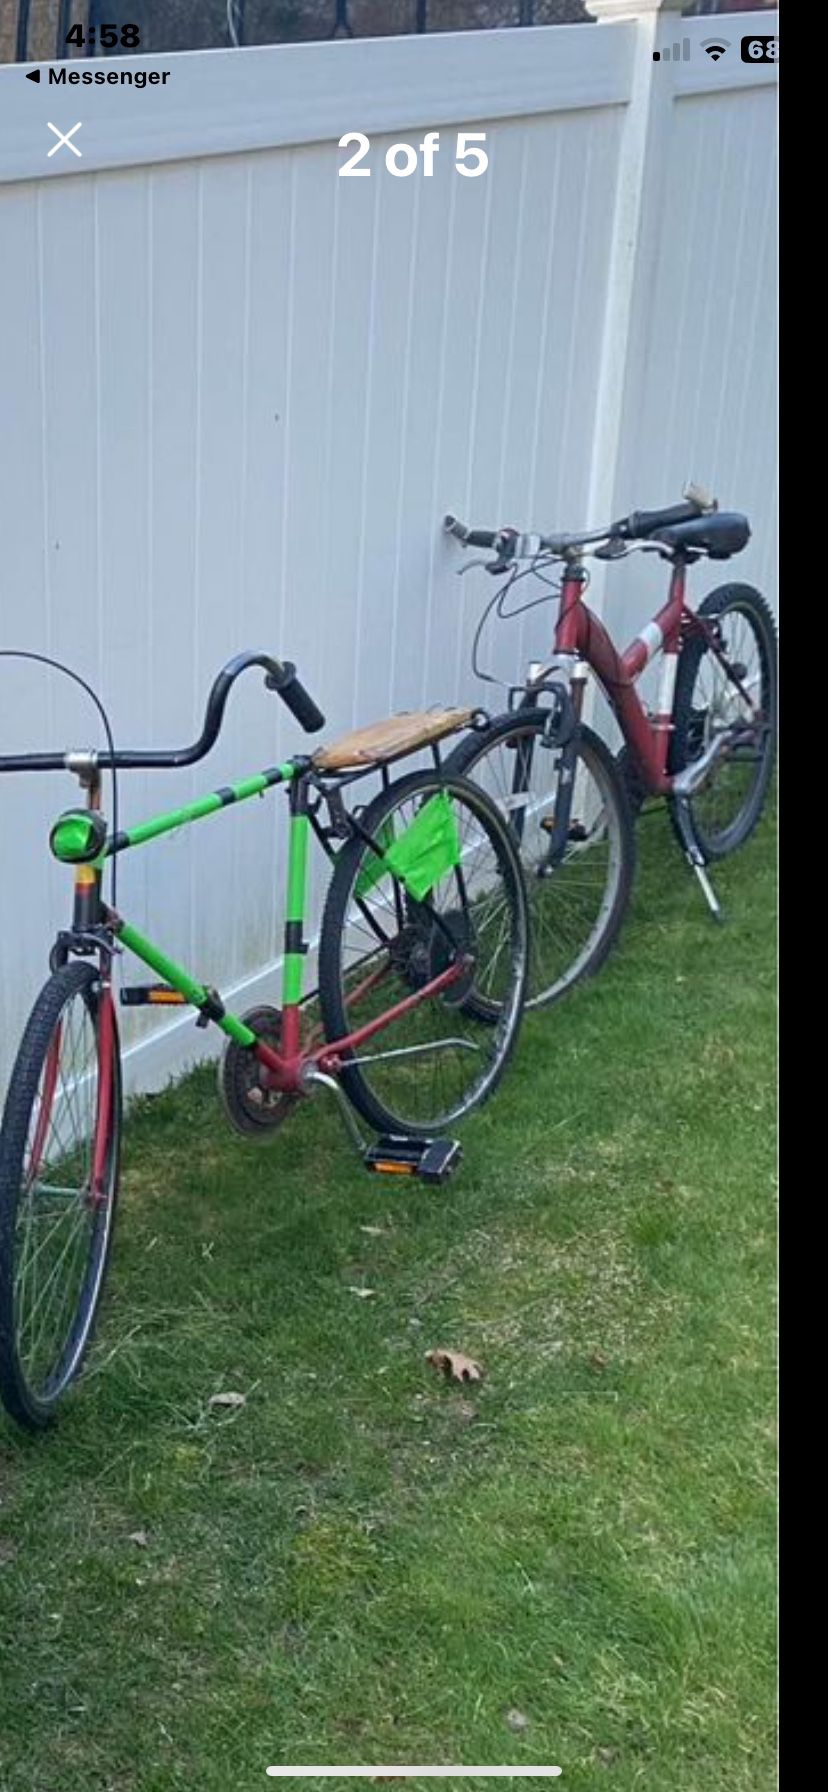 Two Bikes 